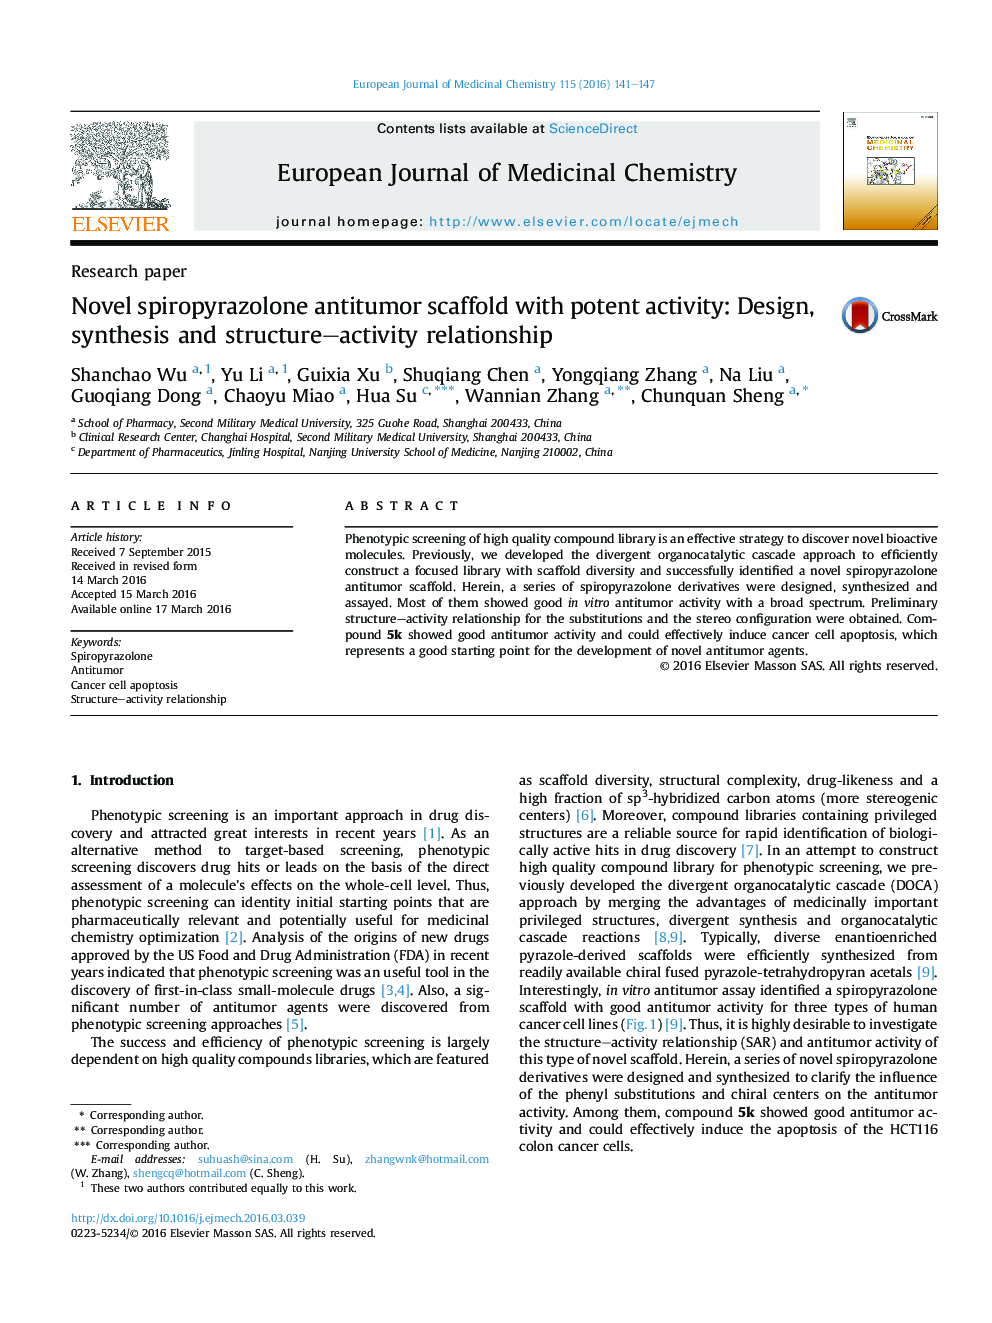 داربست ضد اسپرمی اسپیرپروپرایازولون با فعالیت شدید: رابطه فعالیت، طراحی، ترکیب و ساختار 